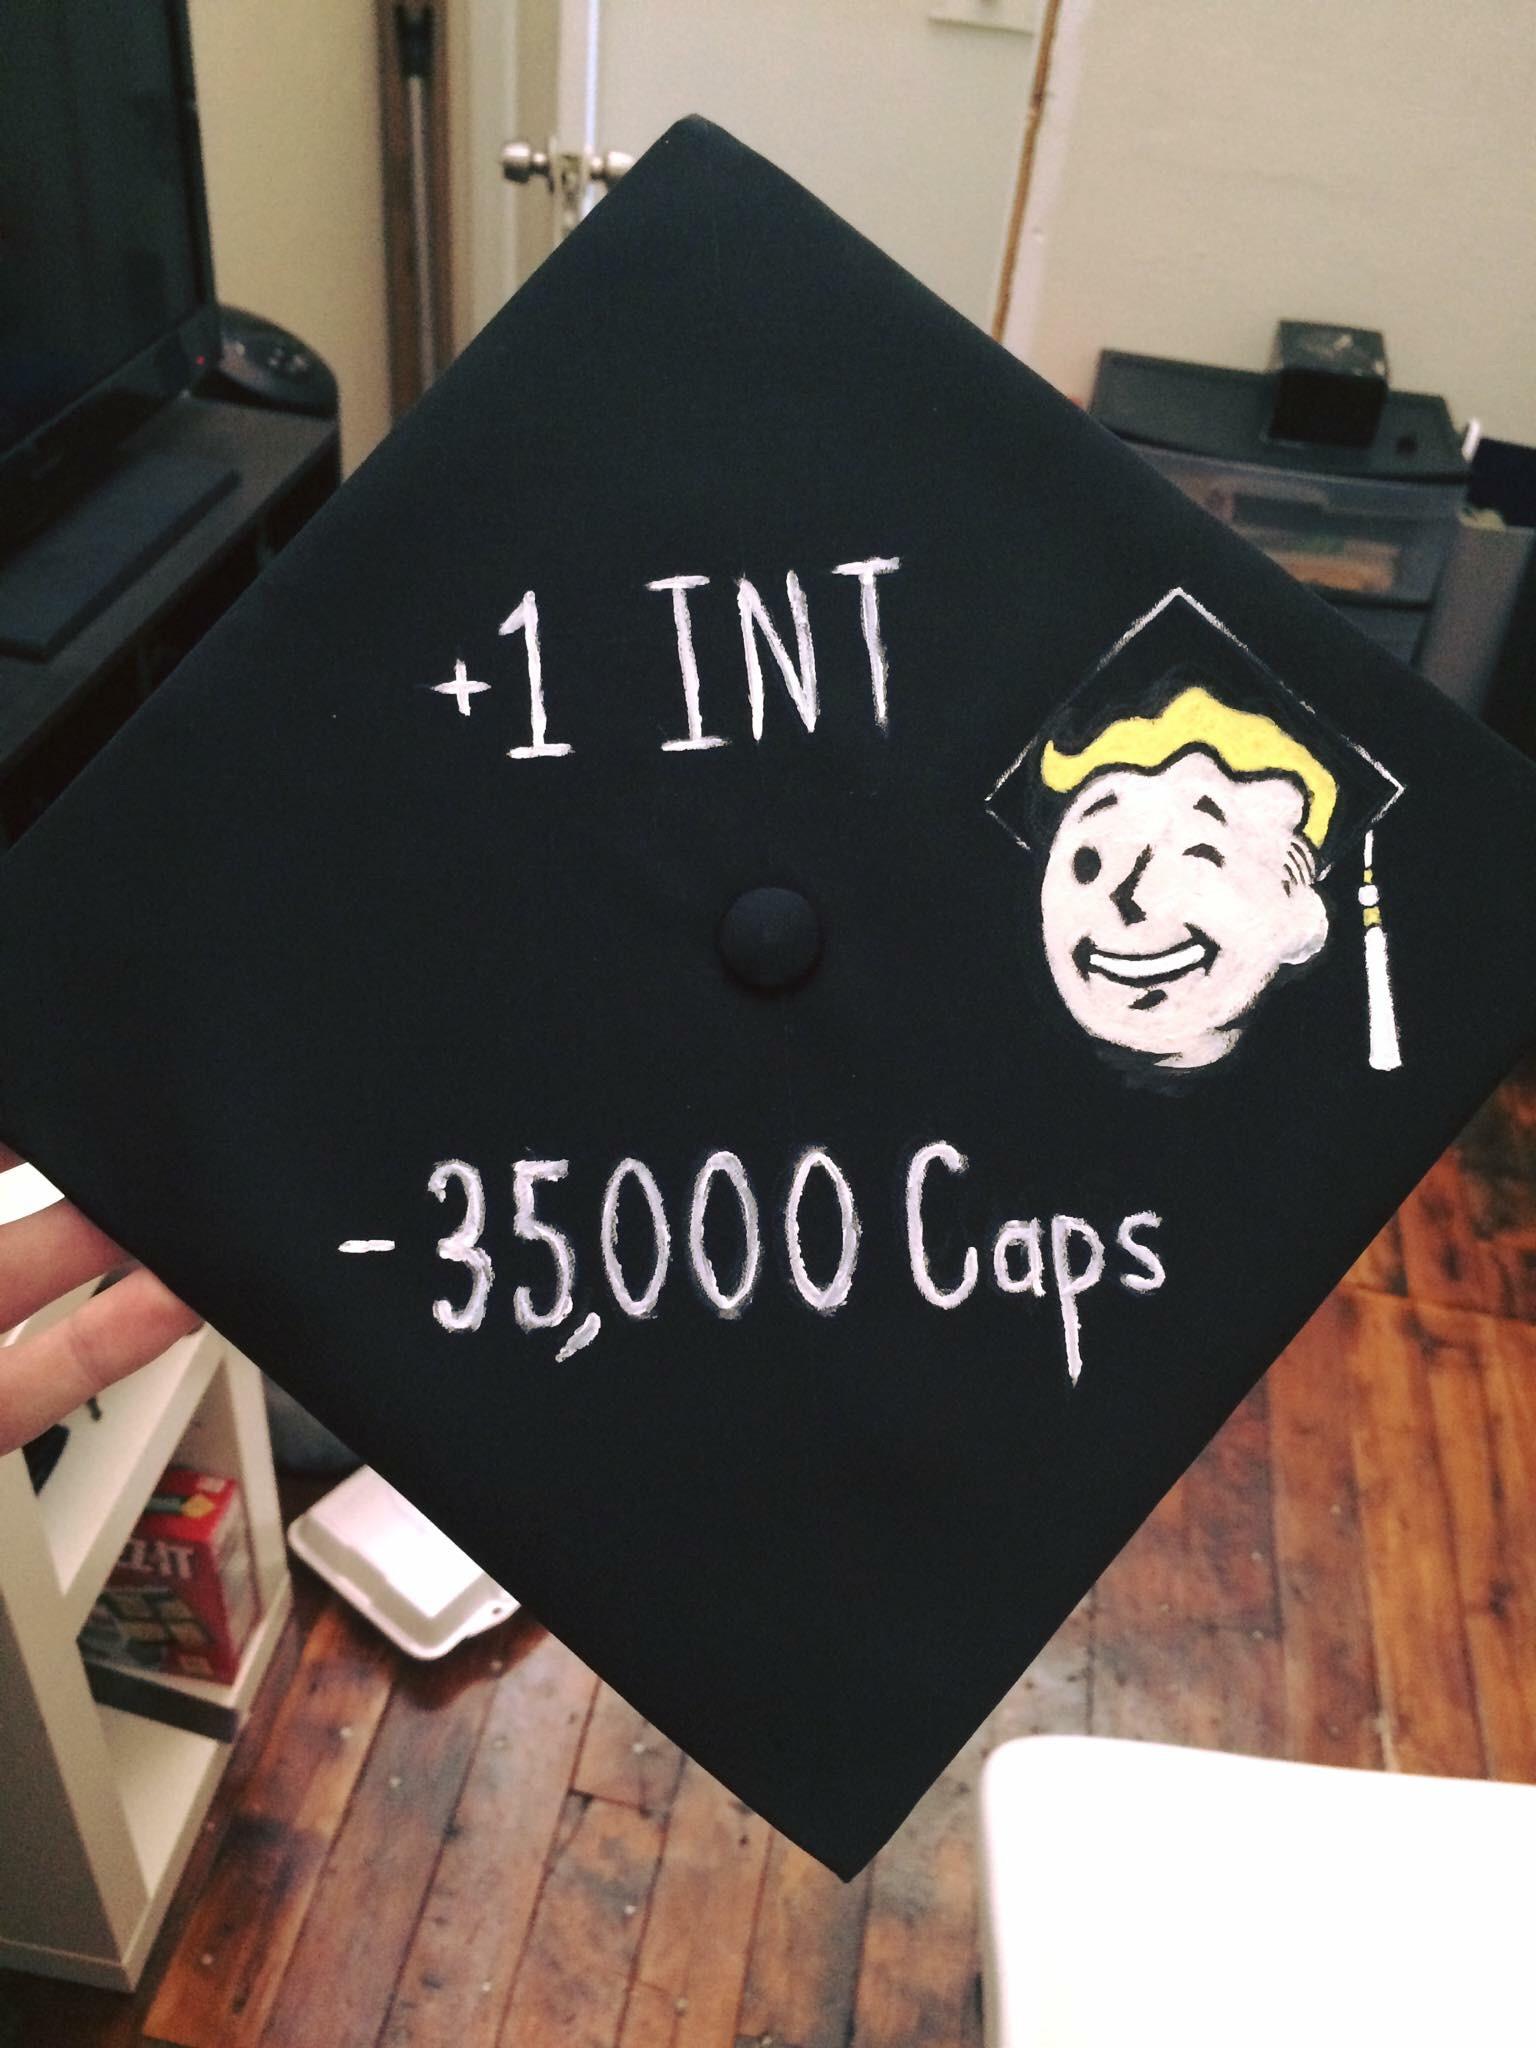 fallout graduation cap - 1 Int 35,000 Caps